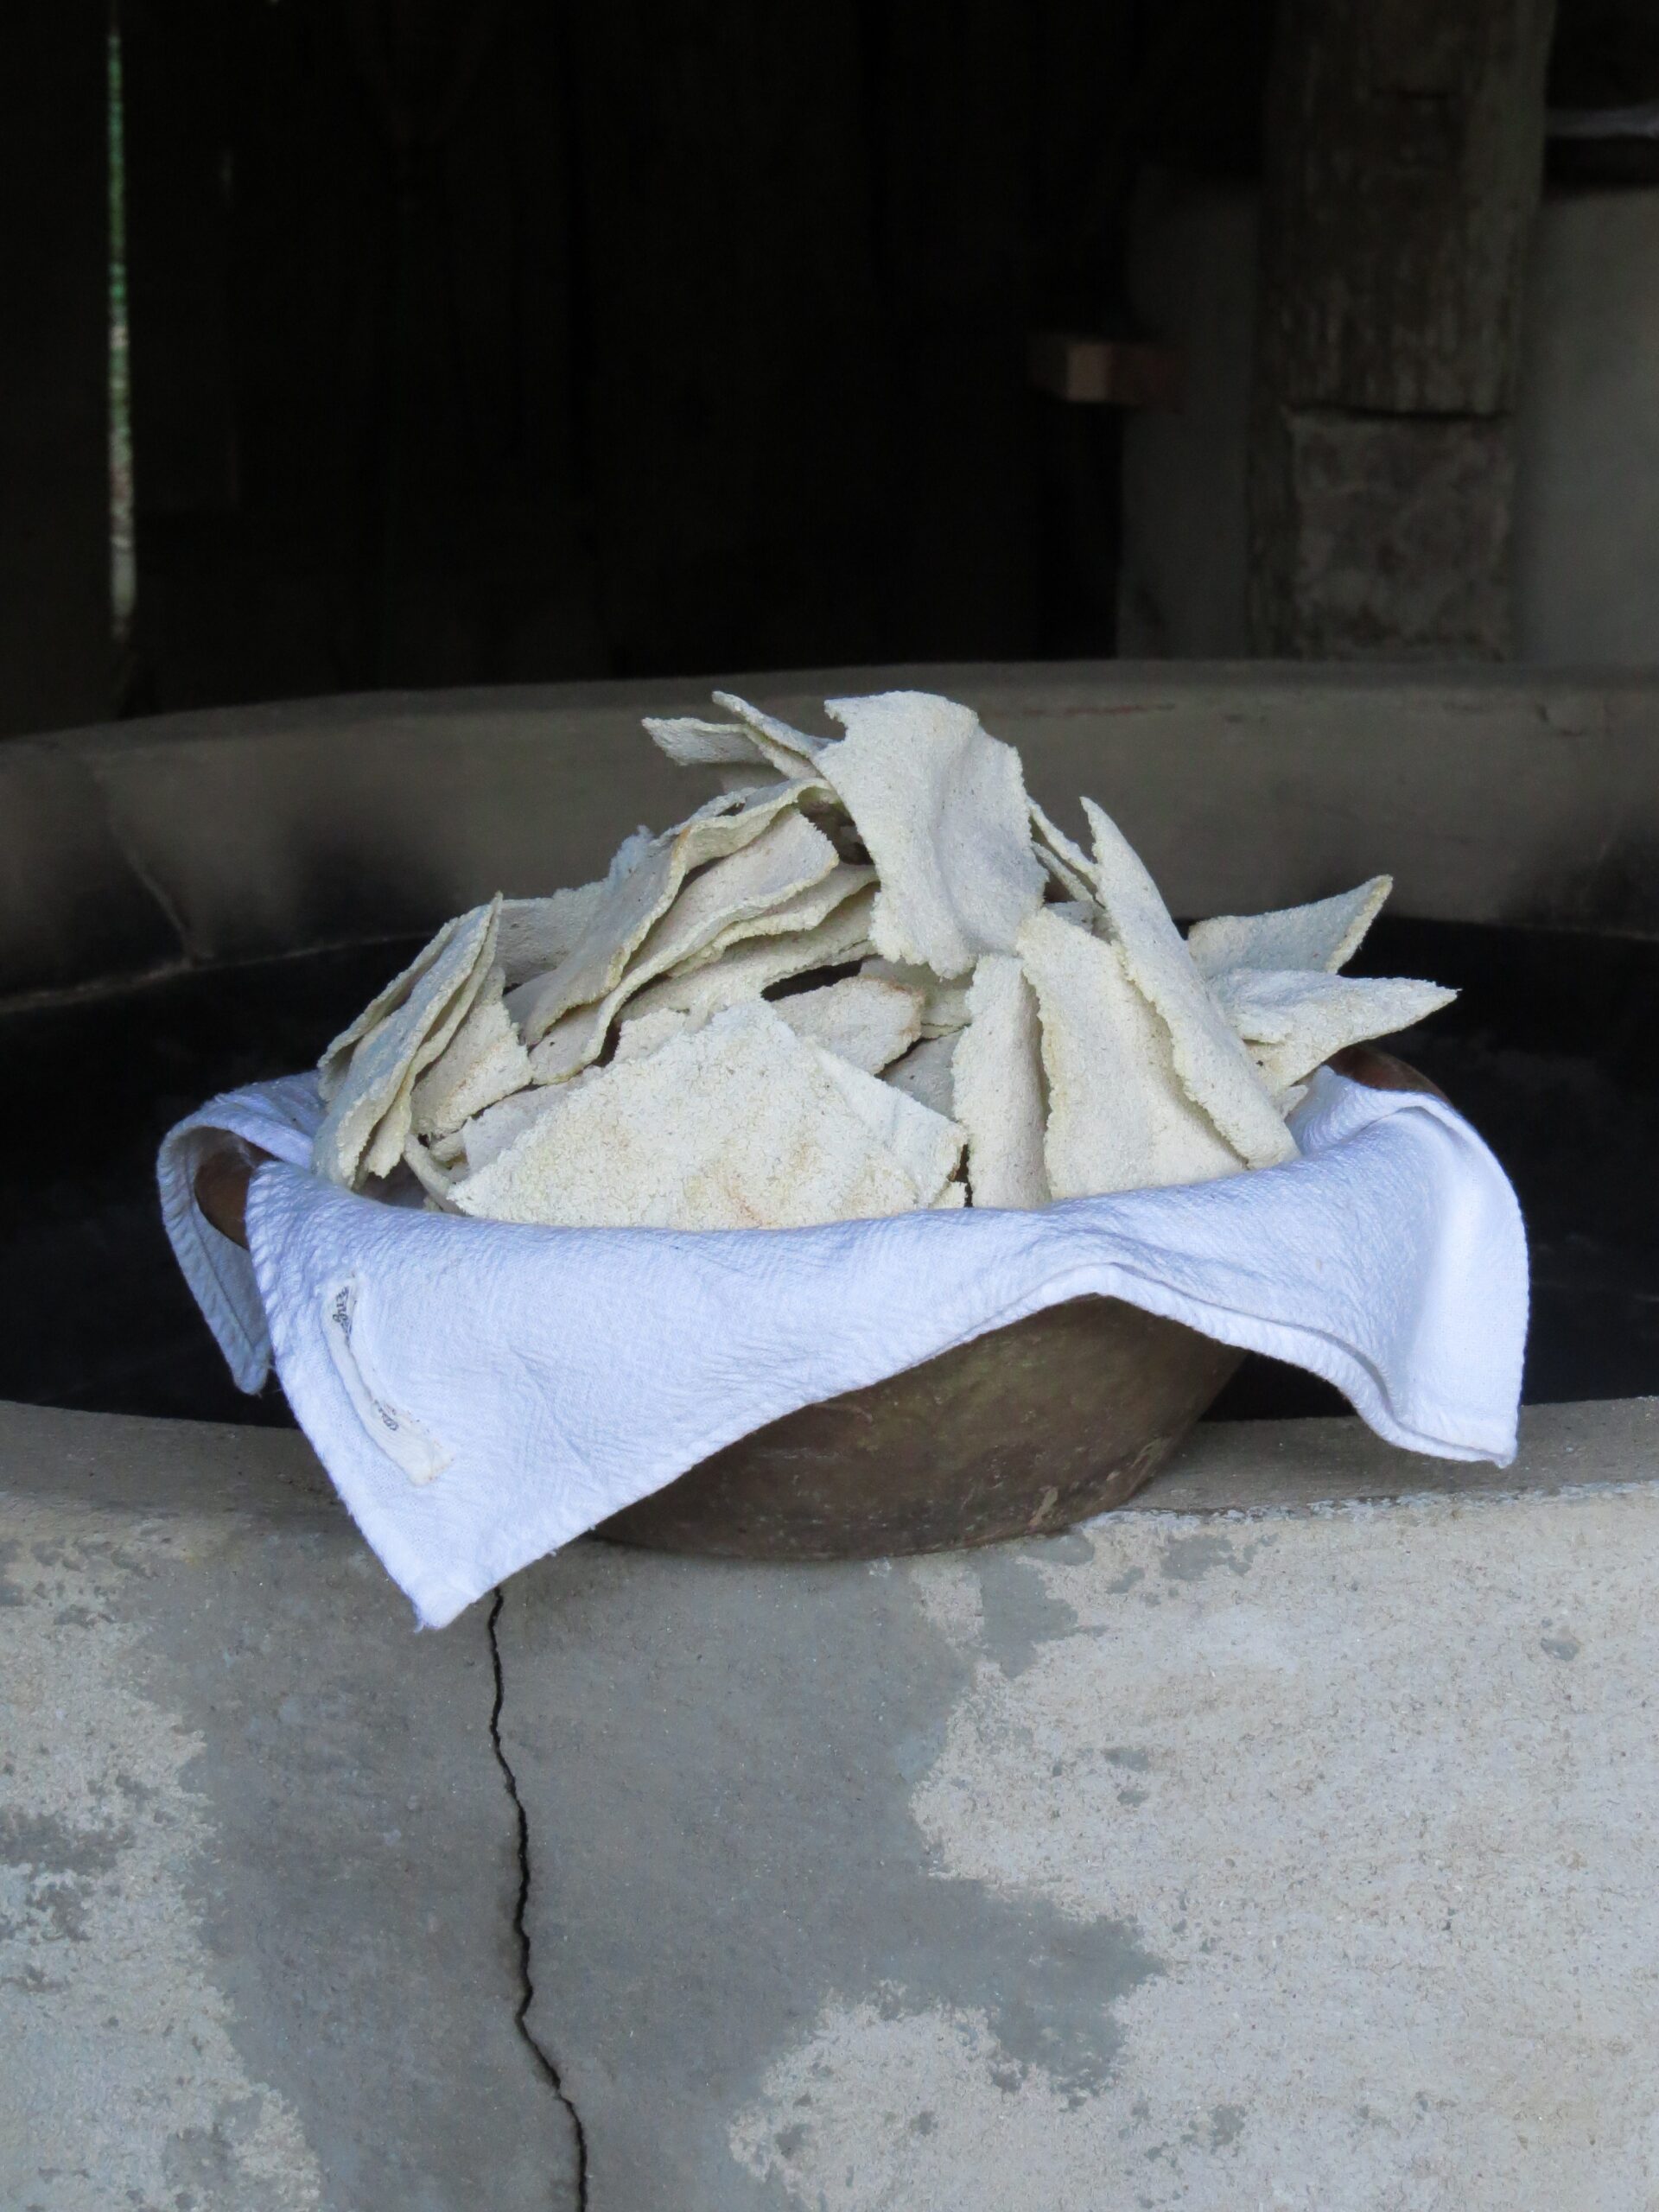 Se aproxima mais um dia de reunião em torno de uma fornalha centenária de engenho de farinha de mandioca para fomentar a manutenção da tradição bombinense.